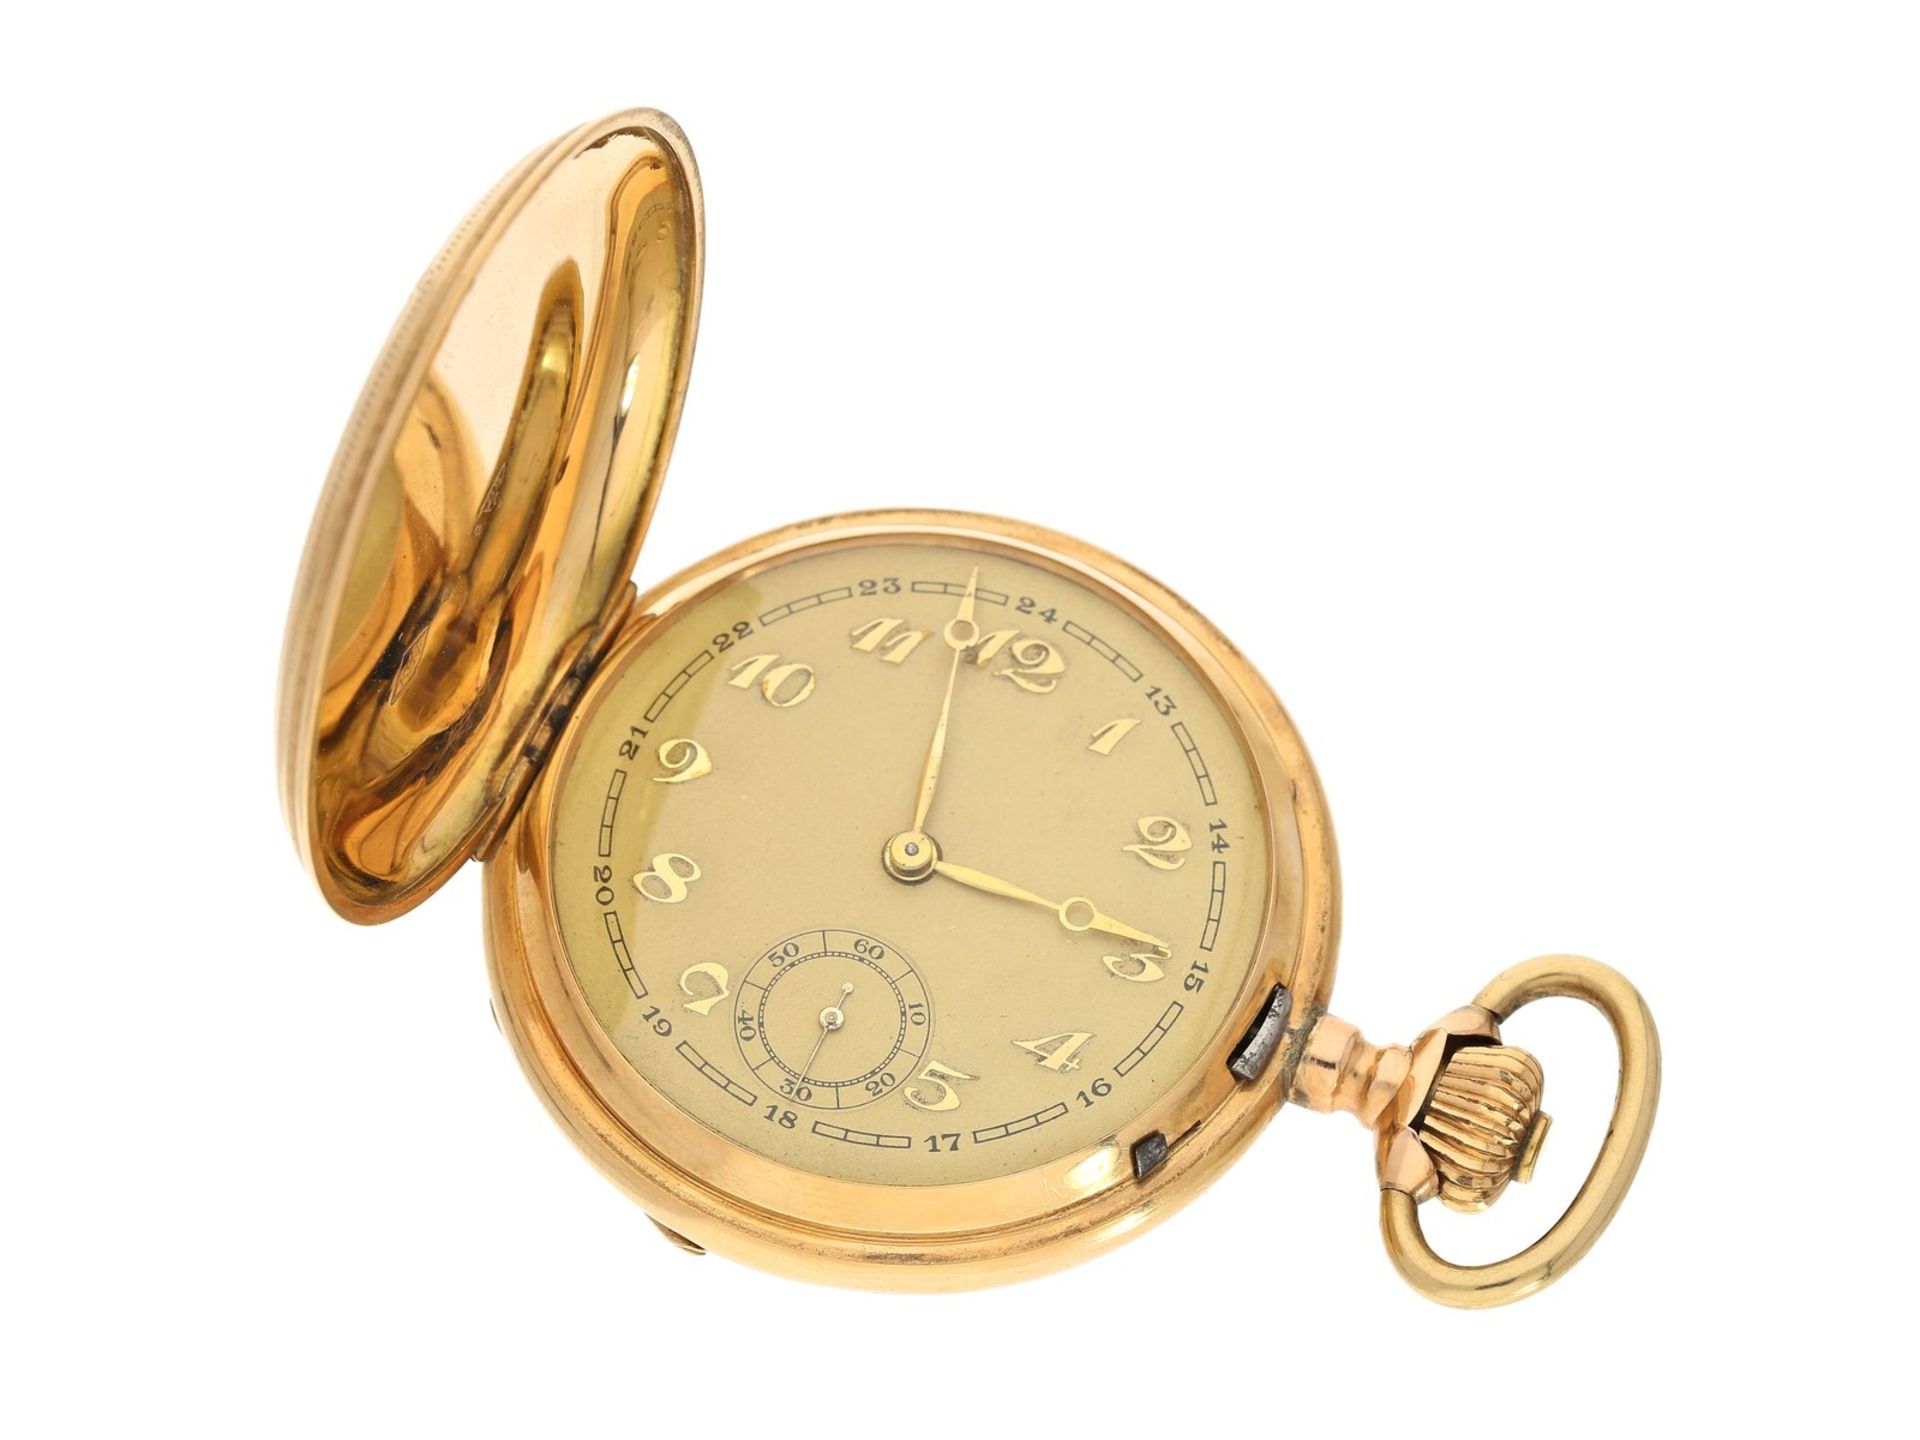 Taschenuhr: goldene Taschenuhr mit goldener Chatelaine, Ducommun-Sandoz & Cie. La Chaux-de-Fonds, um - Bild 2 aus 4